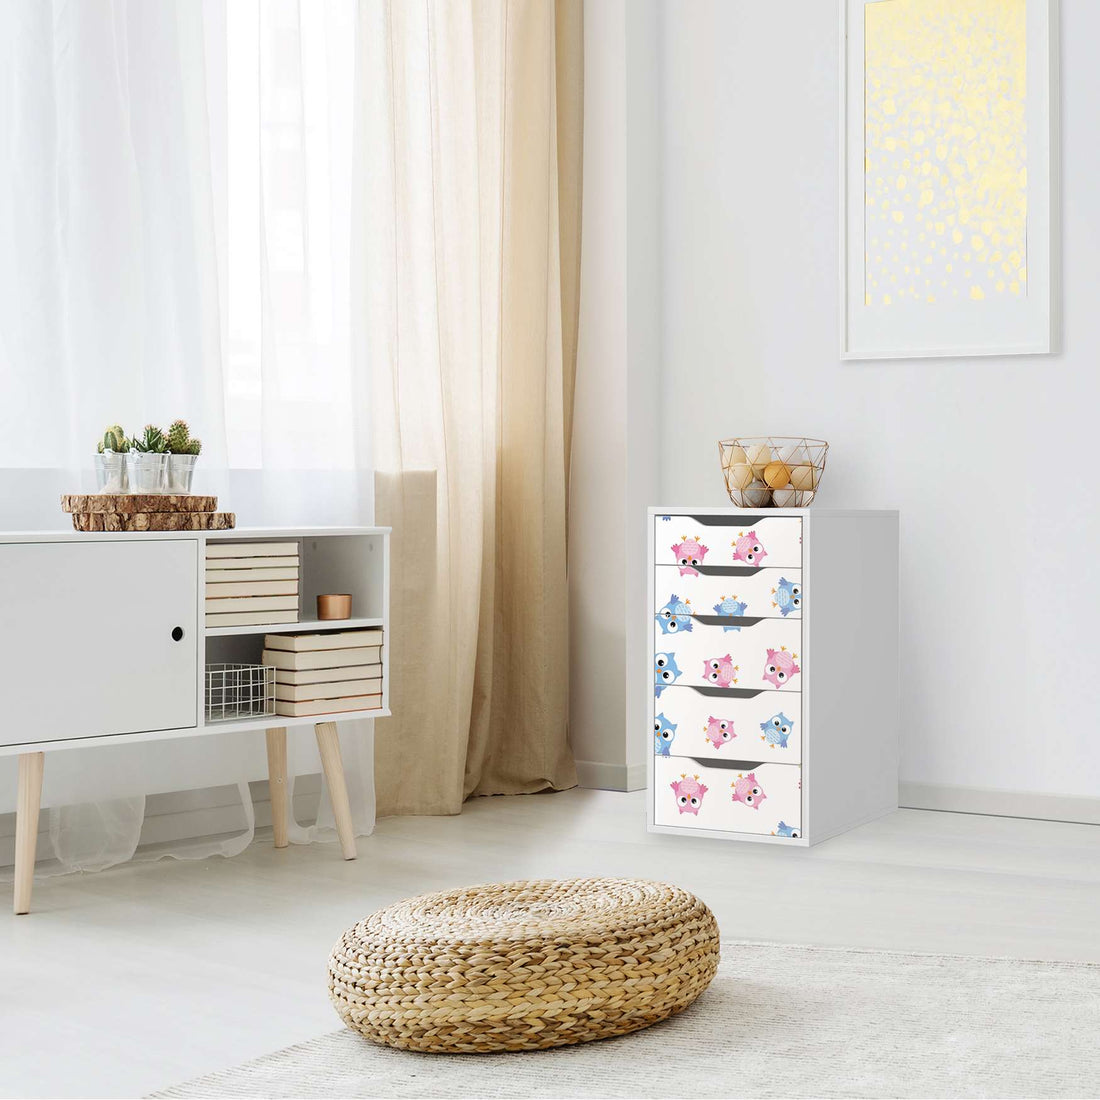 Klebefolie für Möbel Eulenparty - IKEA Alex 5 Schubladen - Kinderzimmer